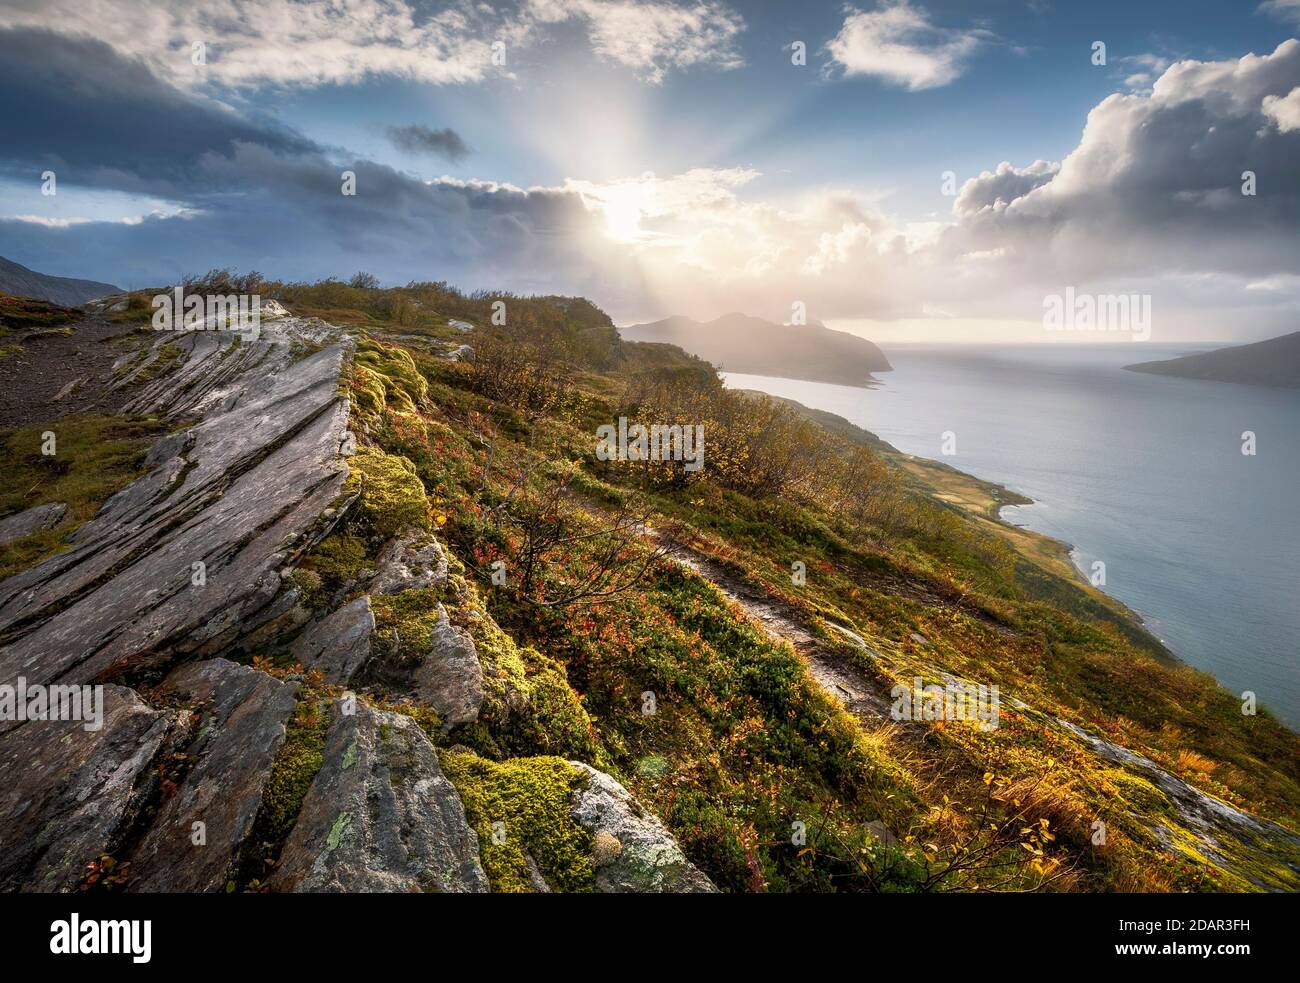 Le soleil se brise à travers des nuages spectaculaires sur le fjord avec des rochers et de la mousse colorée en automne, Nesna, Nordland, Norvège Banque D'Images